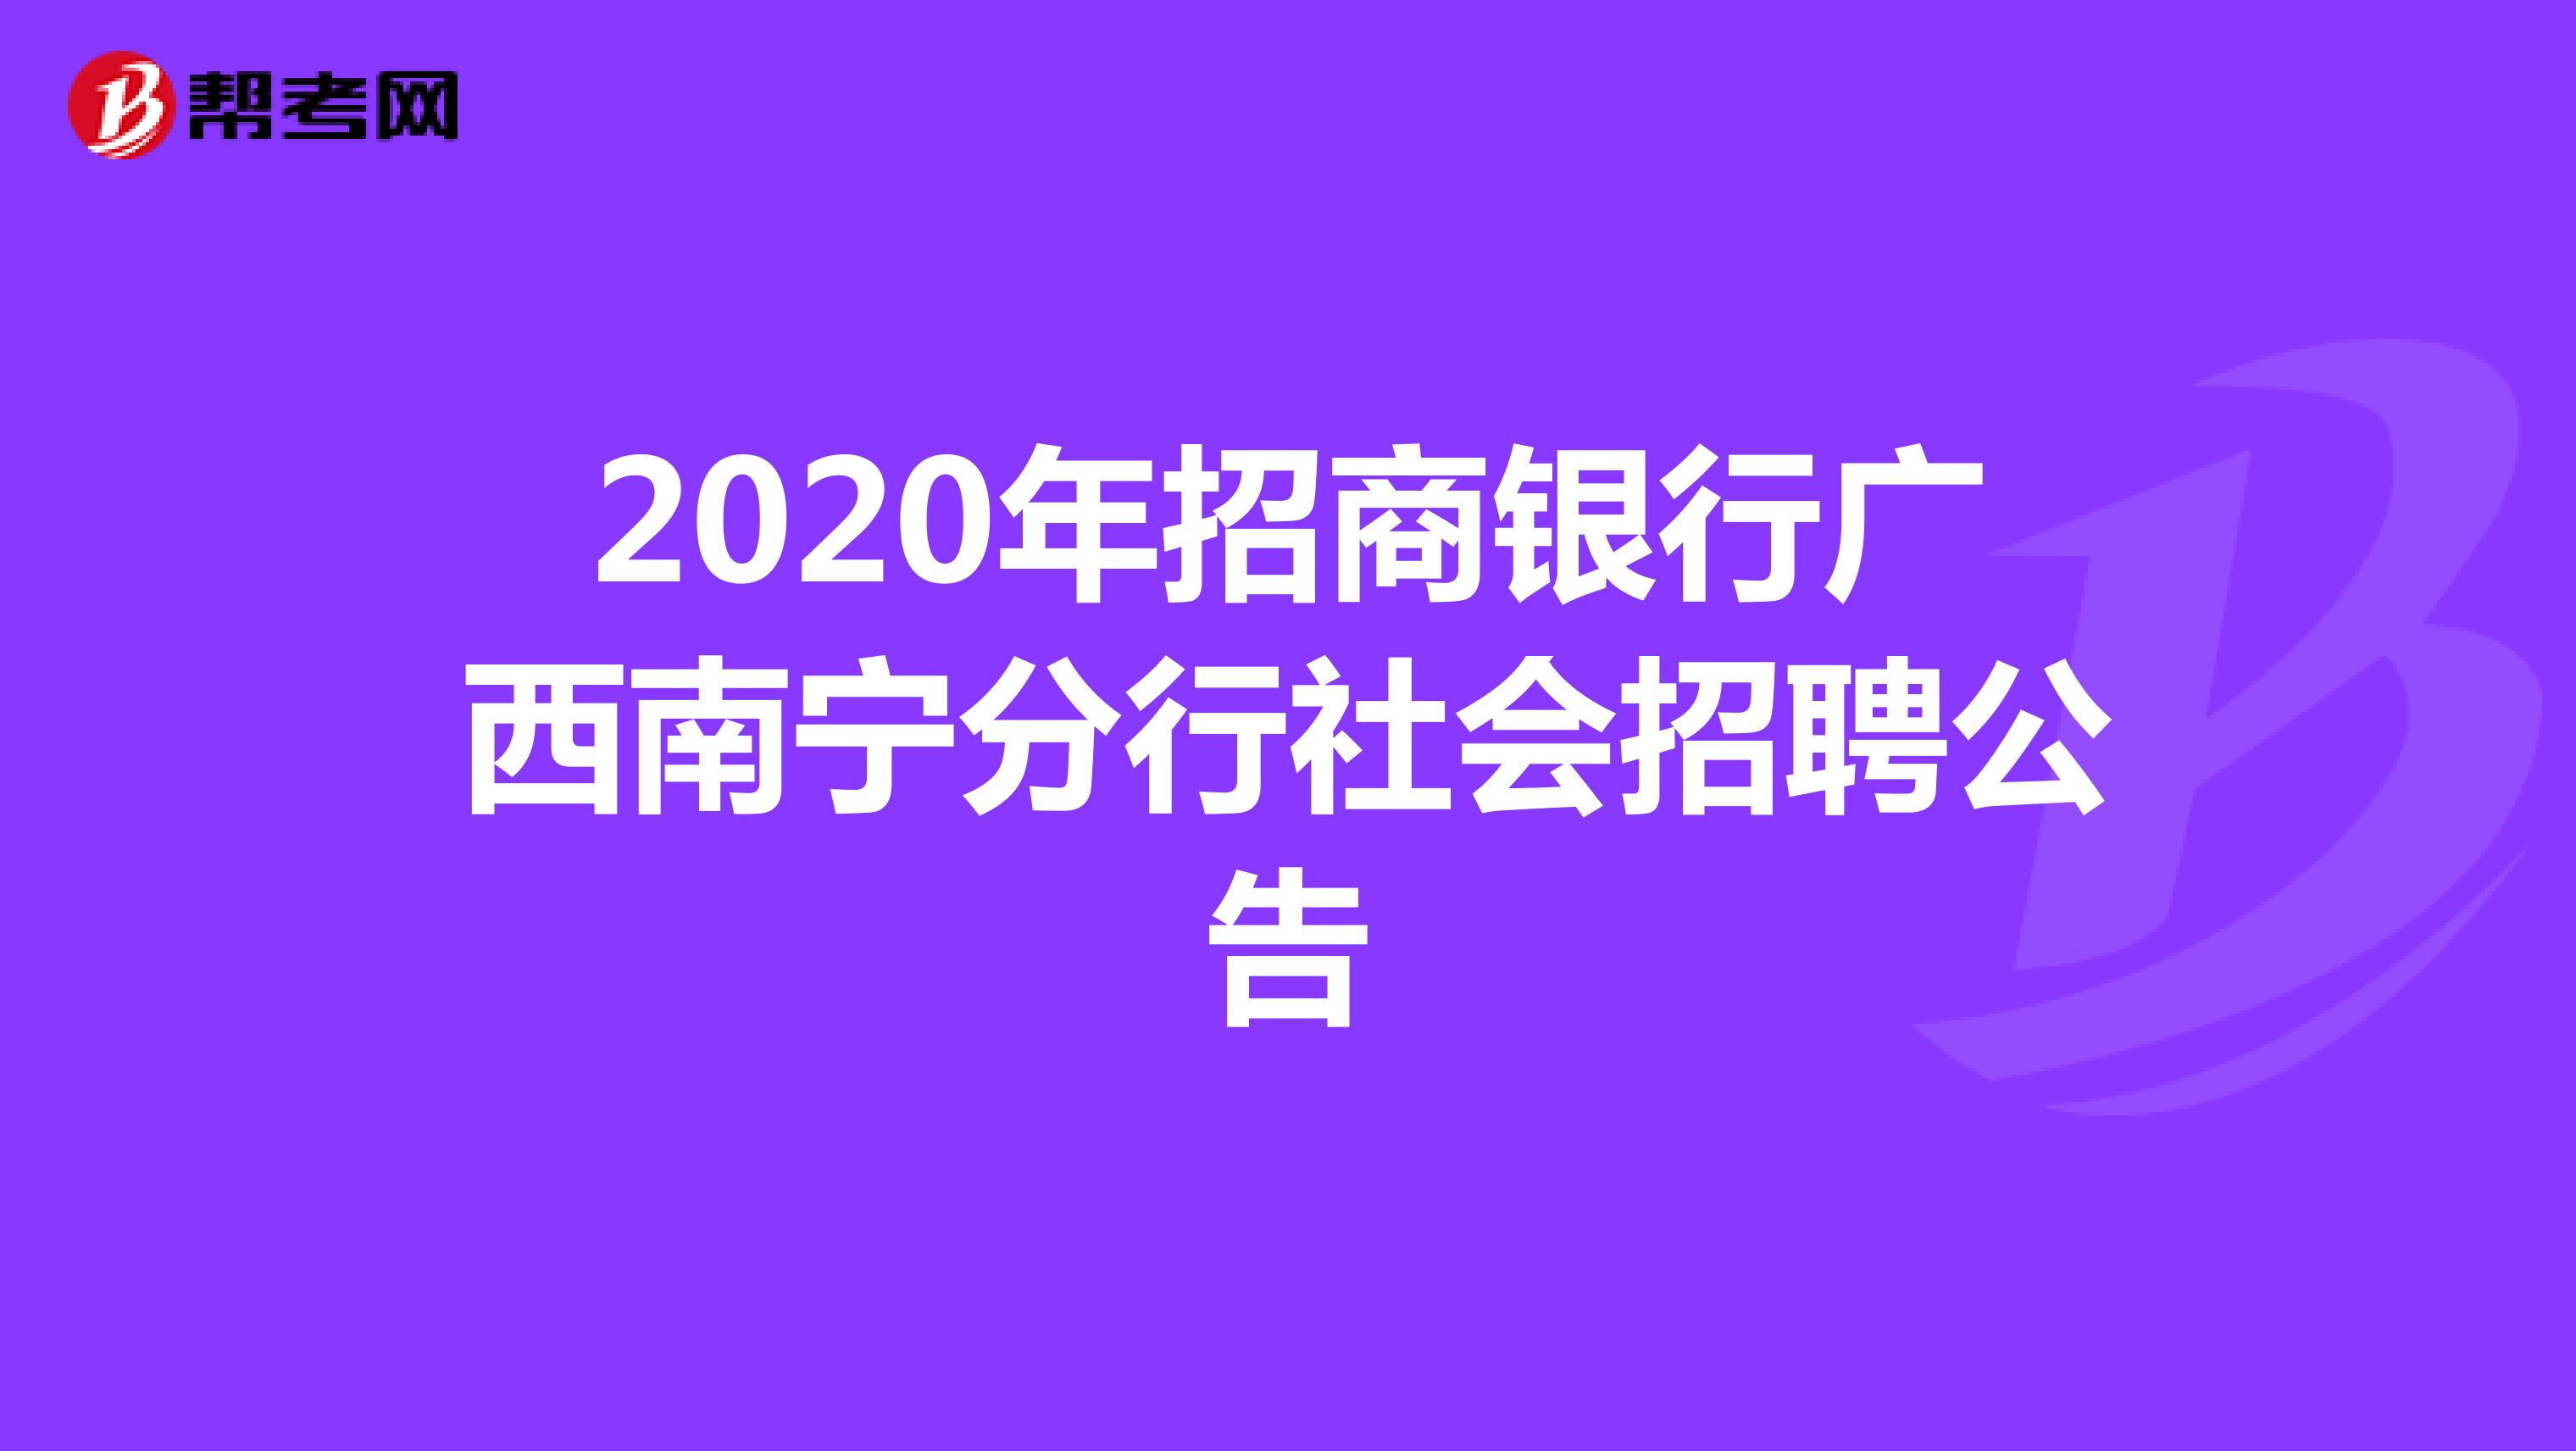 2020年招商银行广西南宁分行社会招聘公告